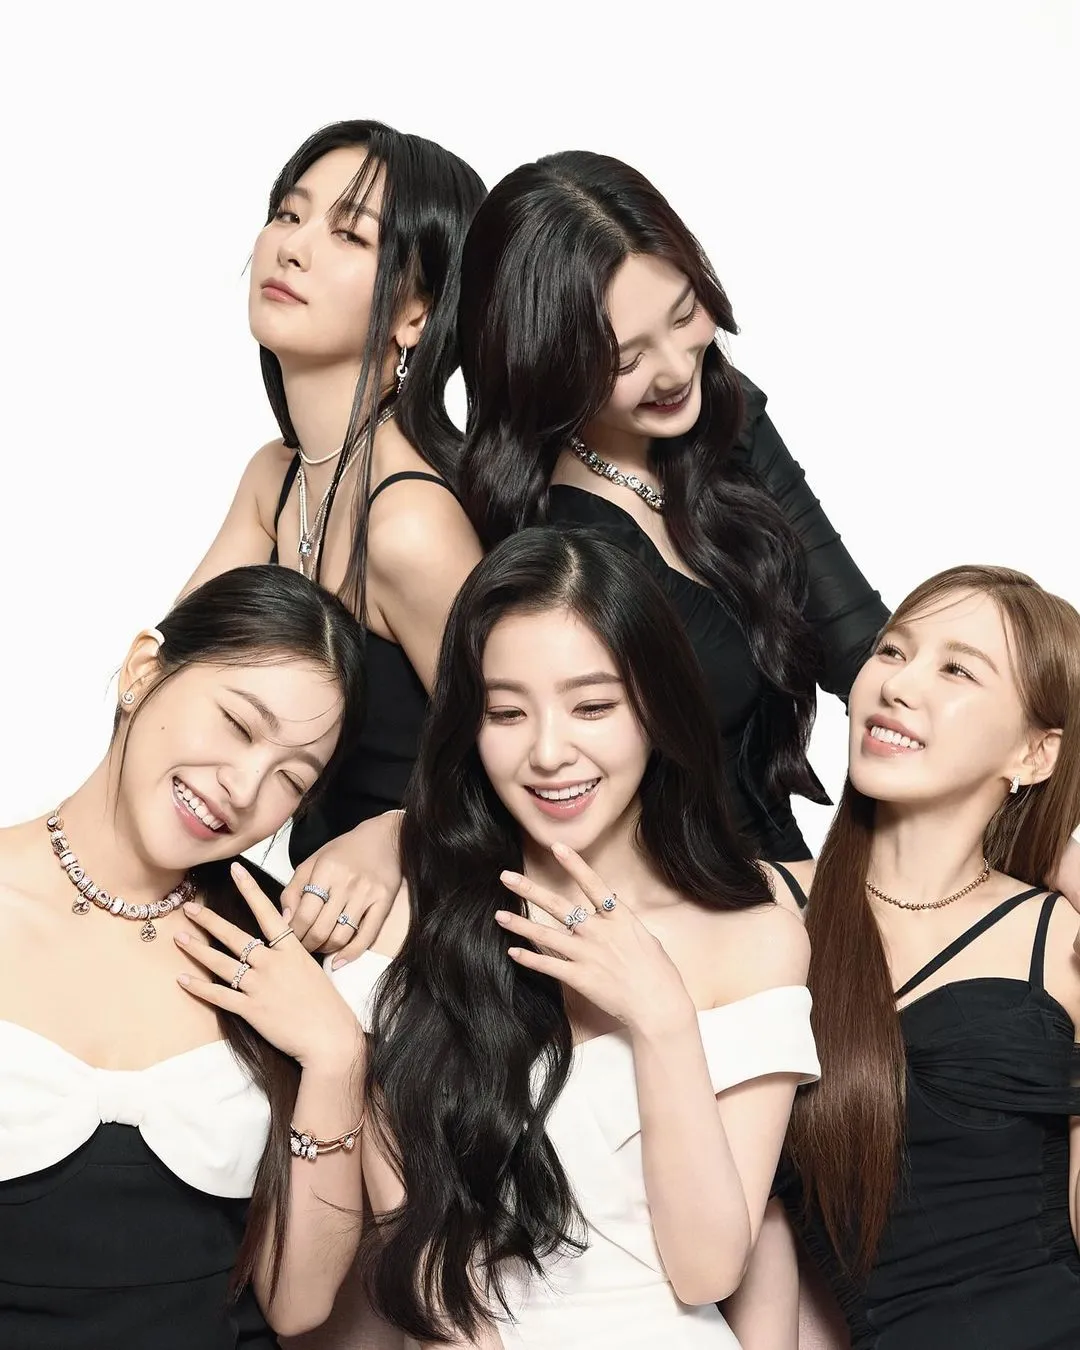 Red Velvet Joy schockiert K-Netz mit aktuellen Bildern: „Ist sie das wirklich?“